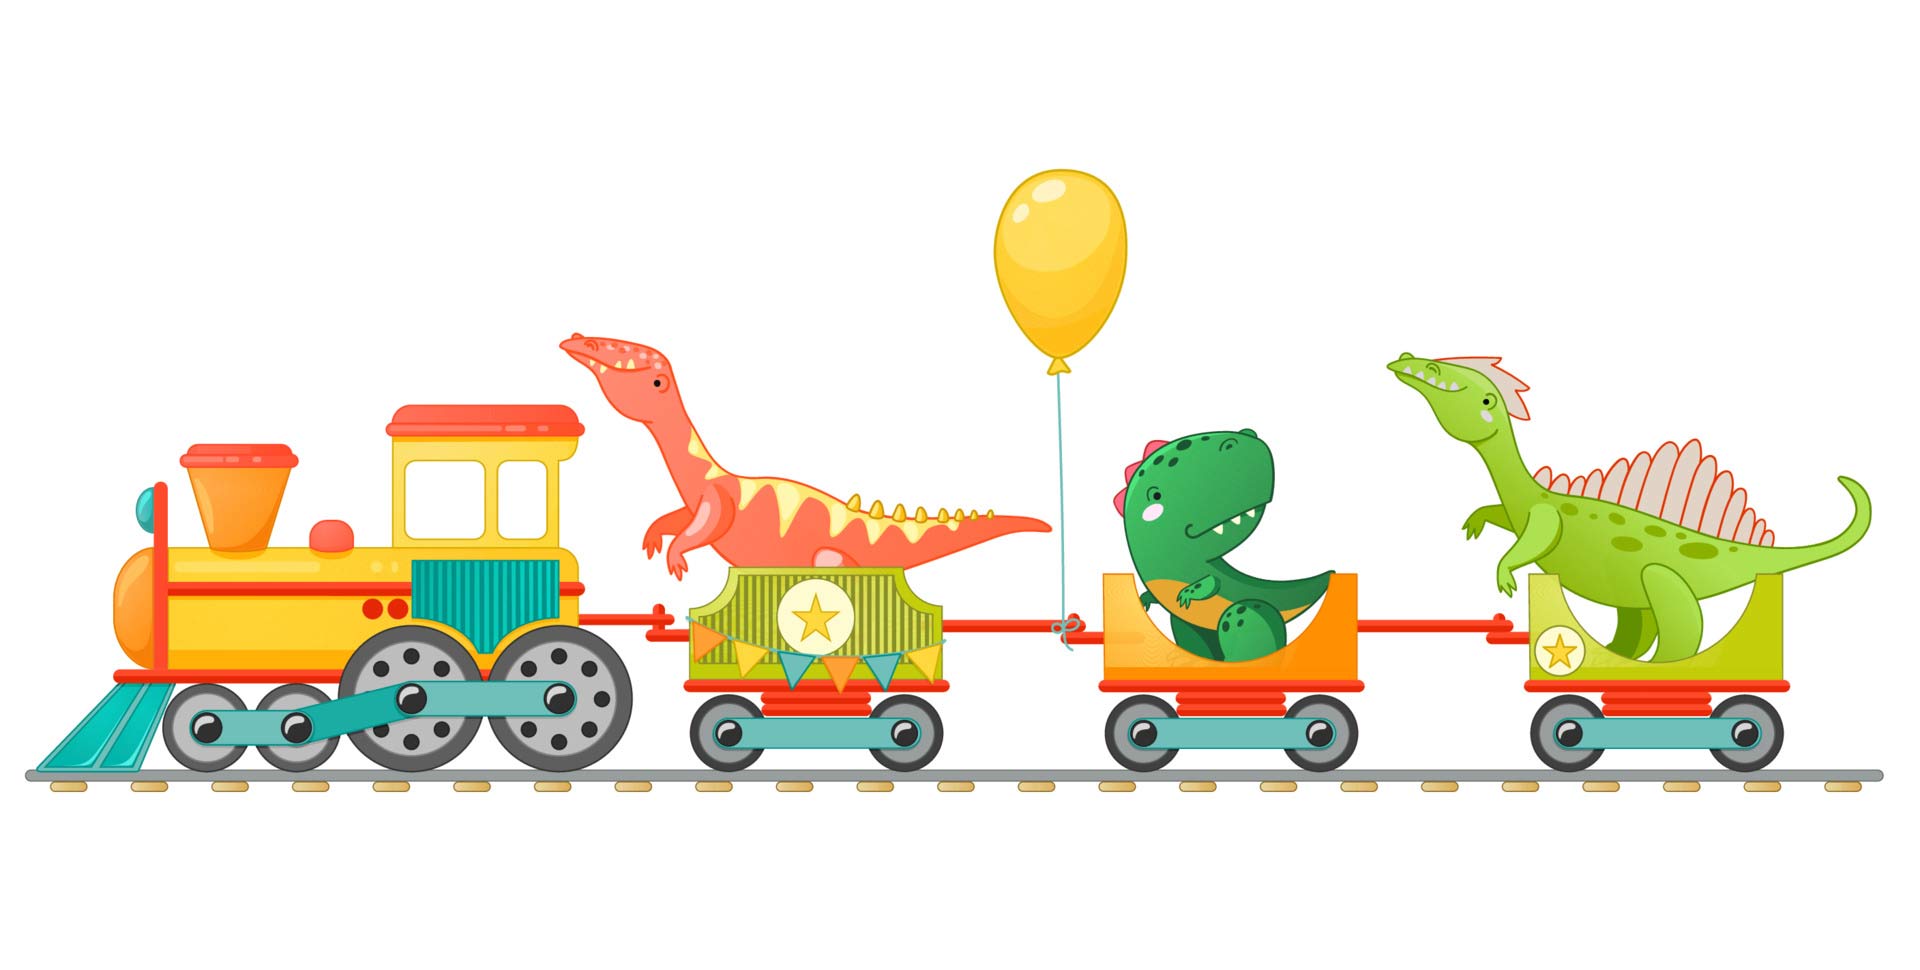 طرح قطار اسباب بازی به همراه دایناسور